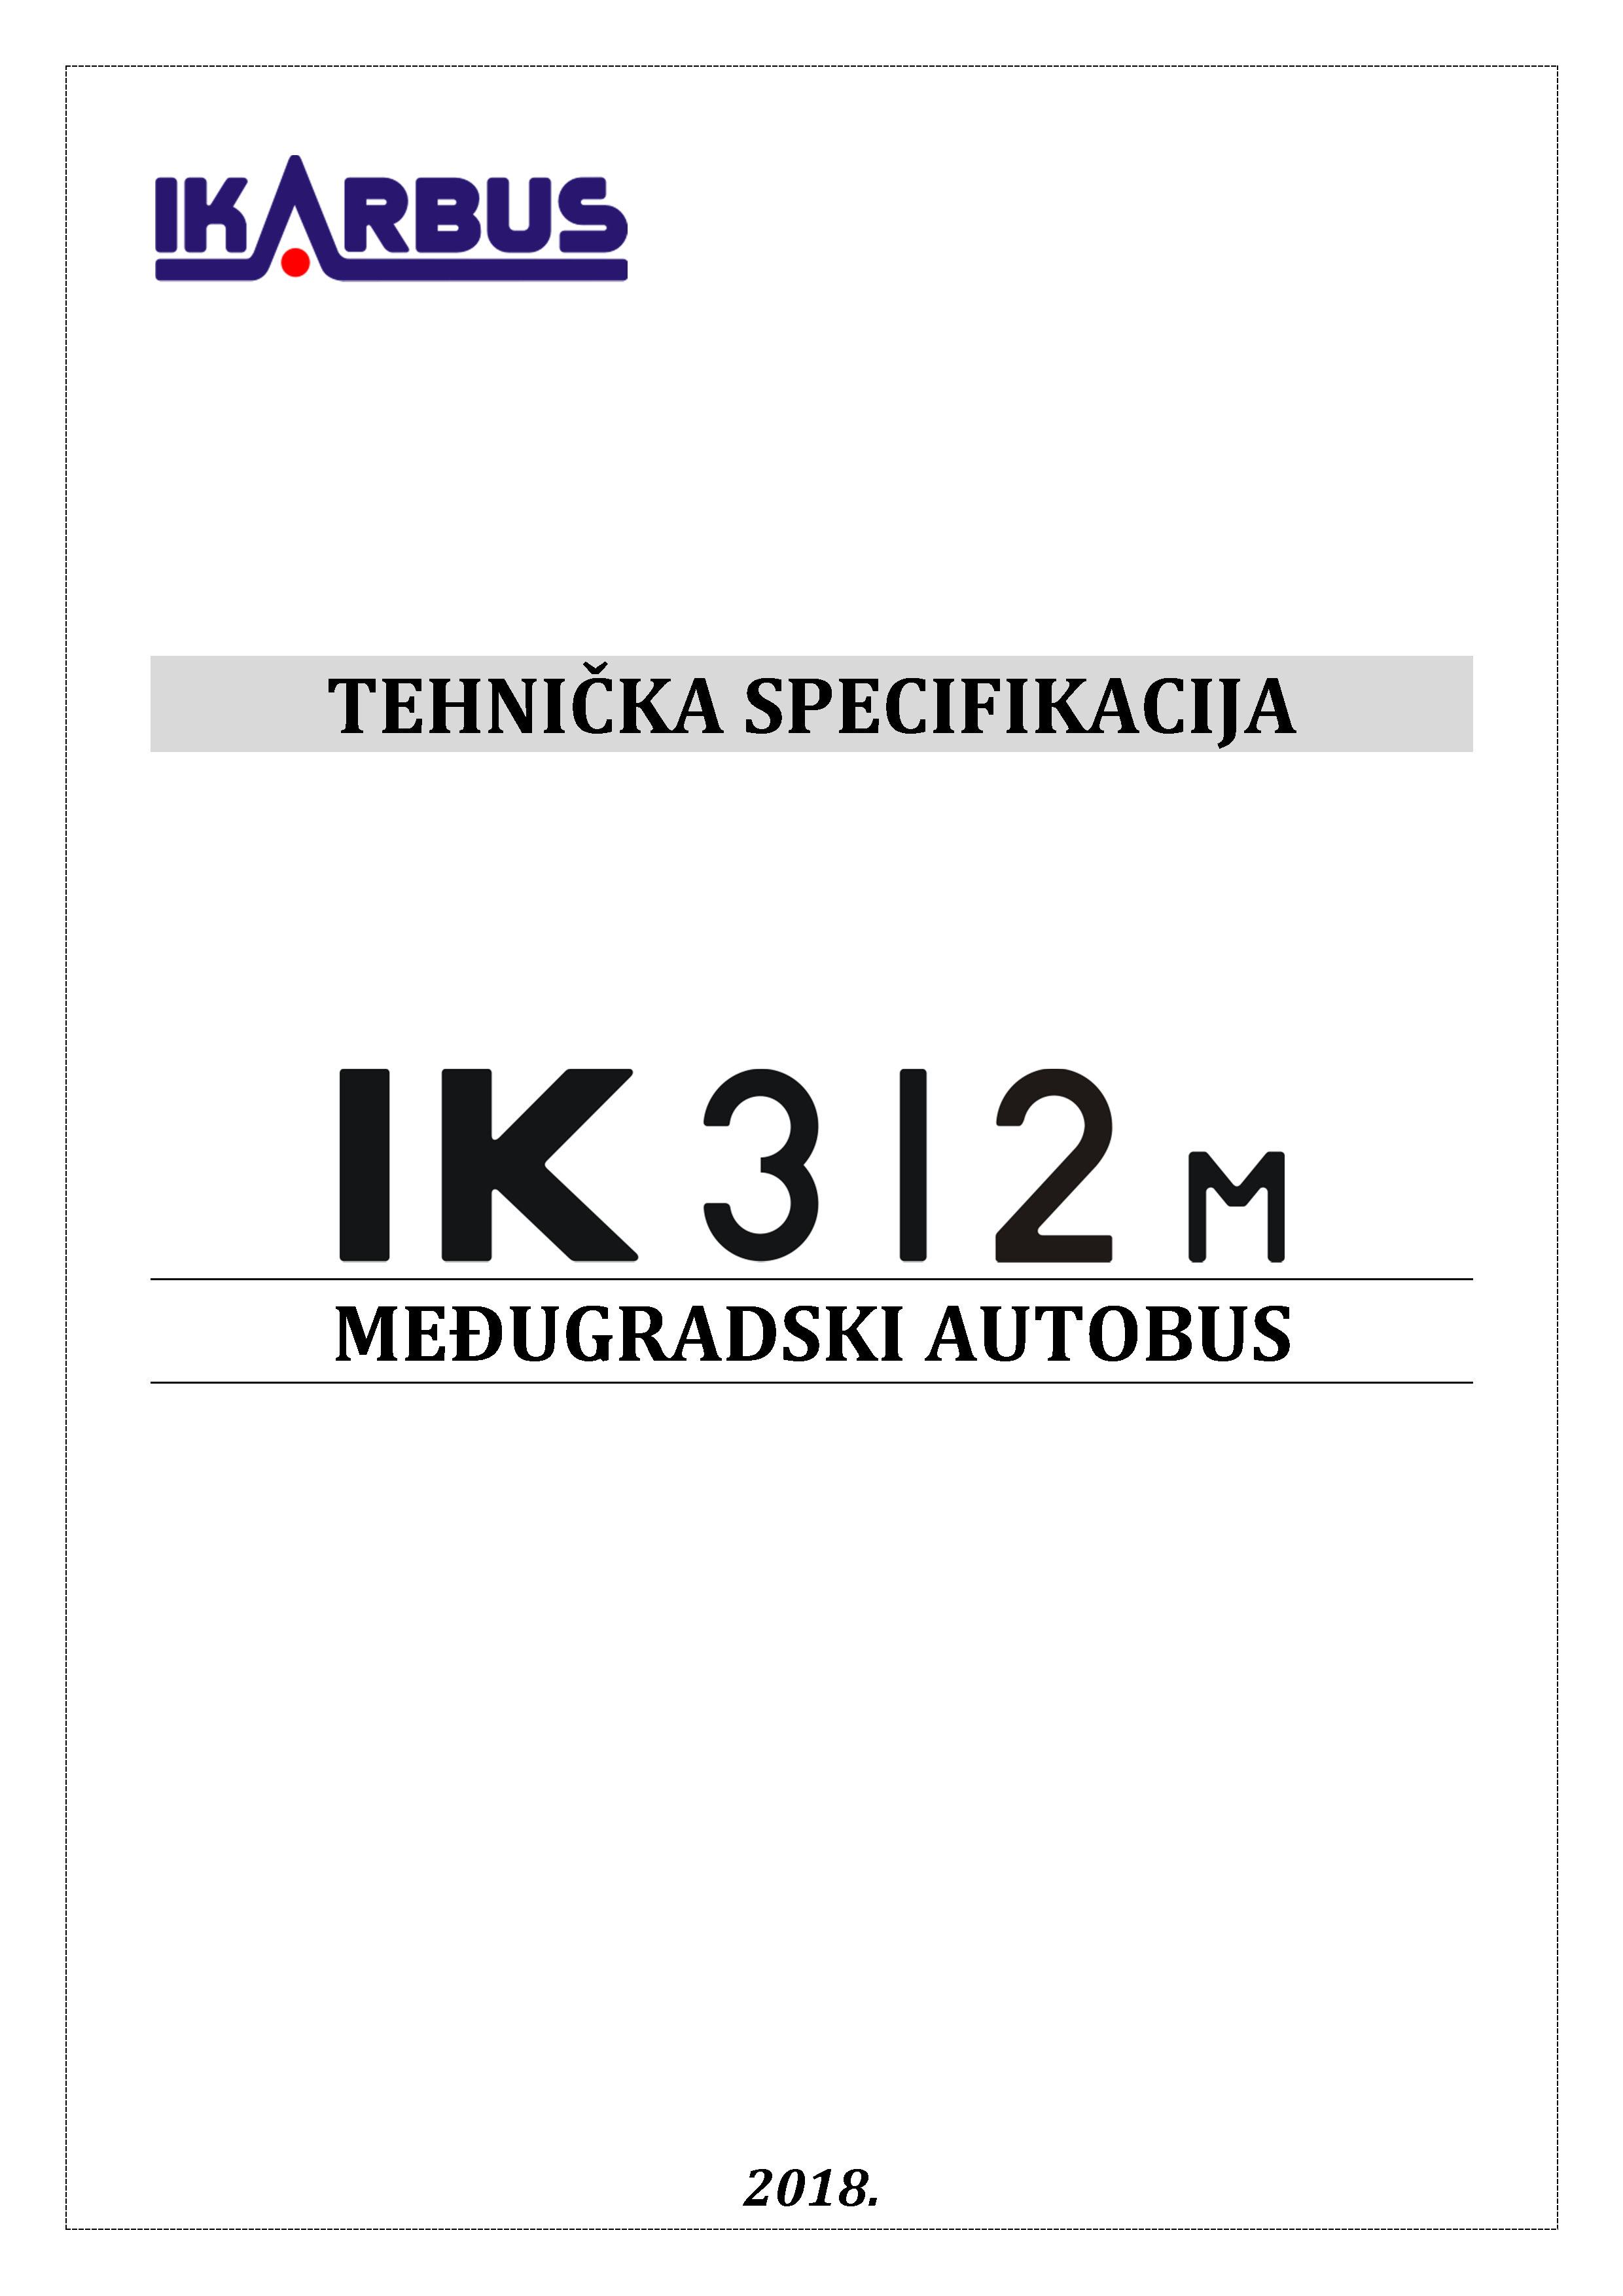 TS IK312M sr